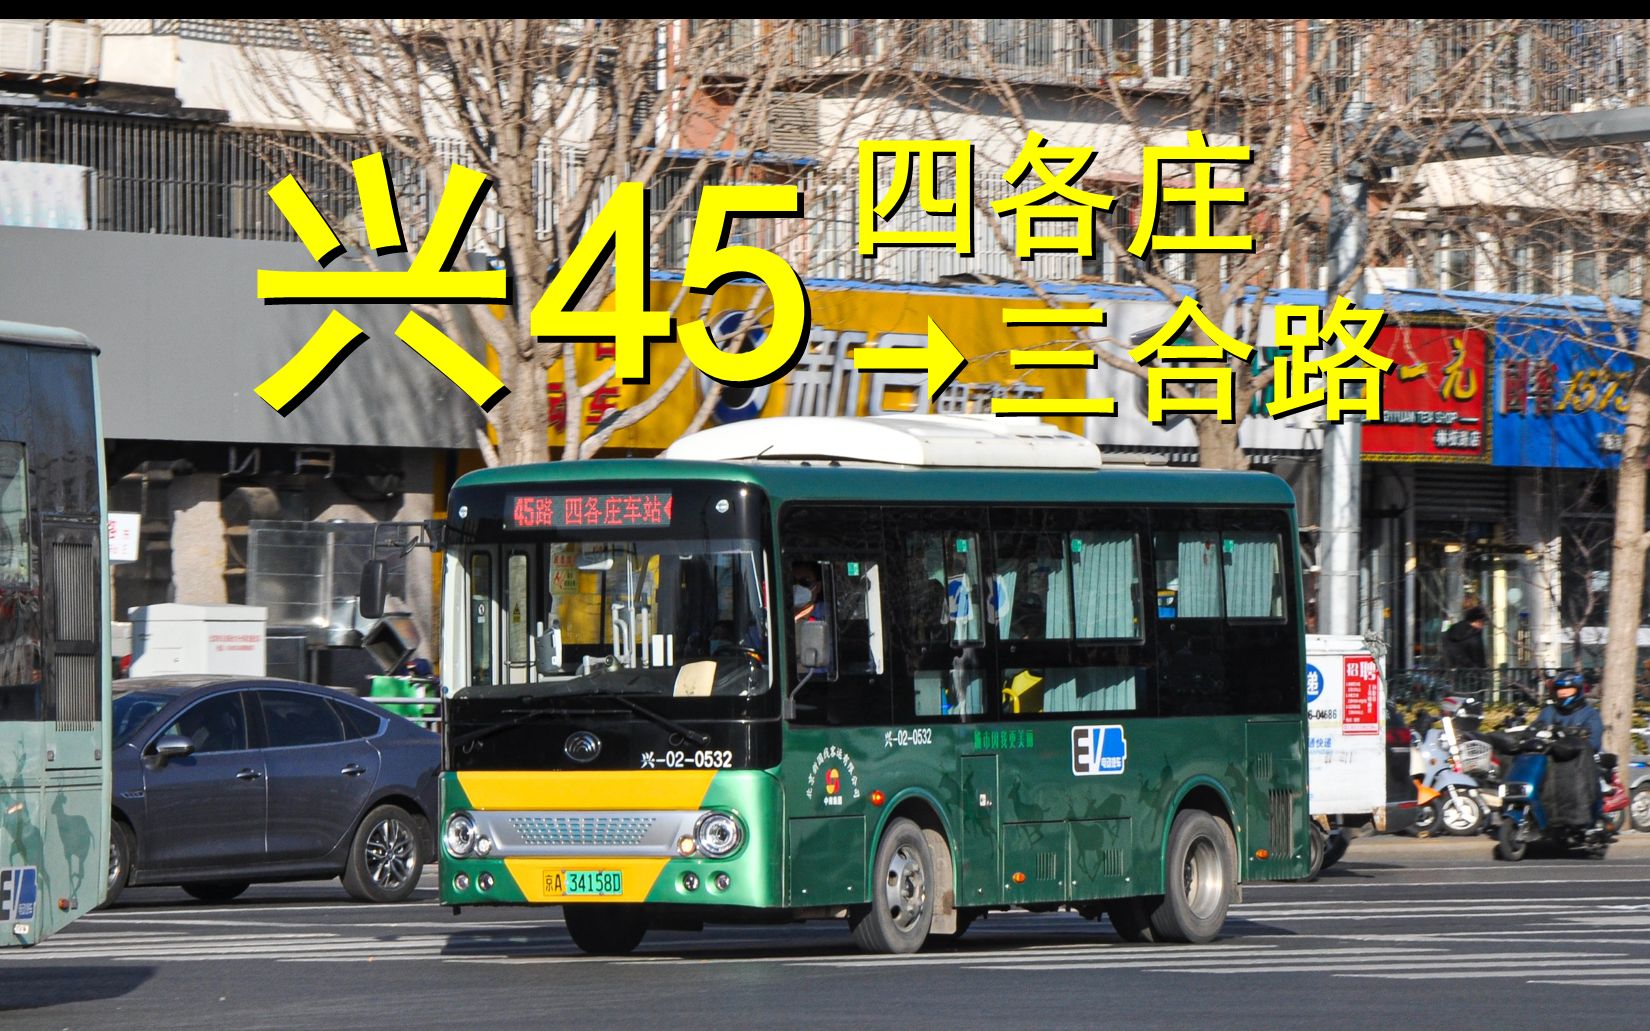 嘉林45路公交车图片